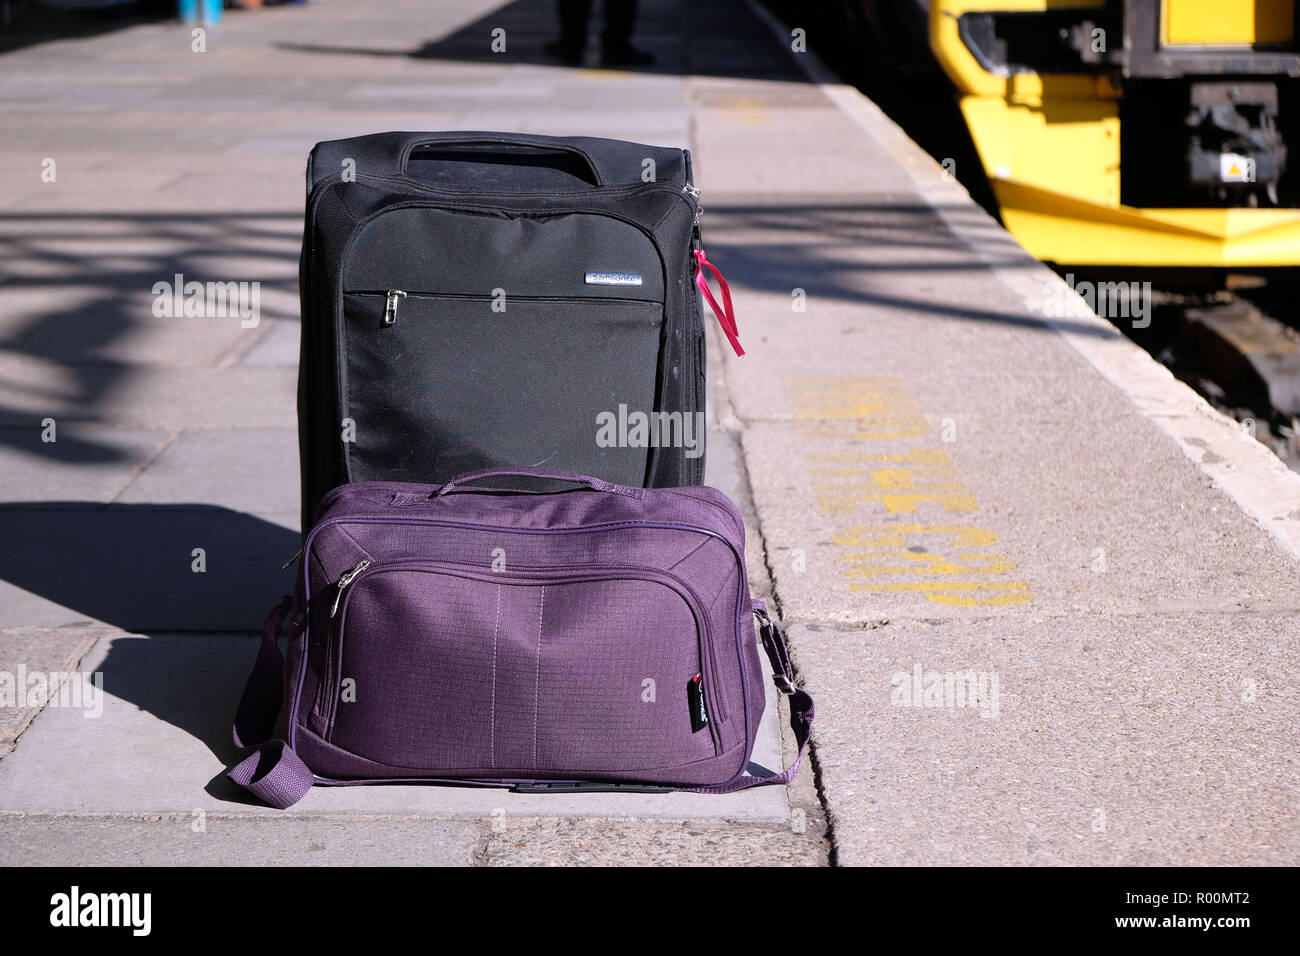 Pic mostra: Nuova borsa piccola taglia ammessi sui piani di Ryanair per  libero. Borsa viola è